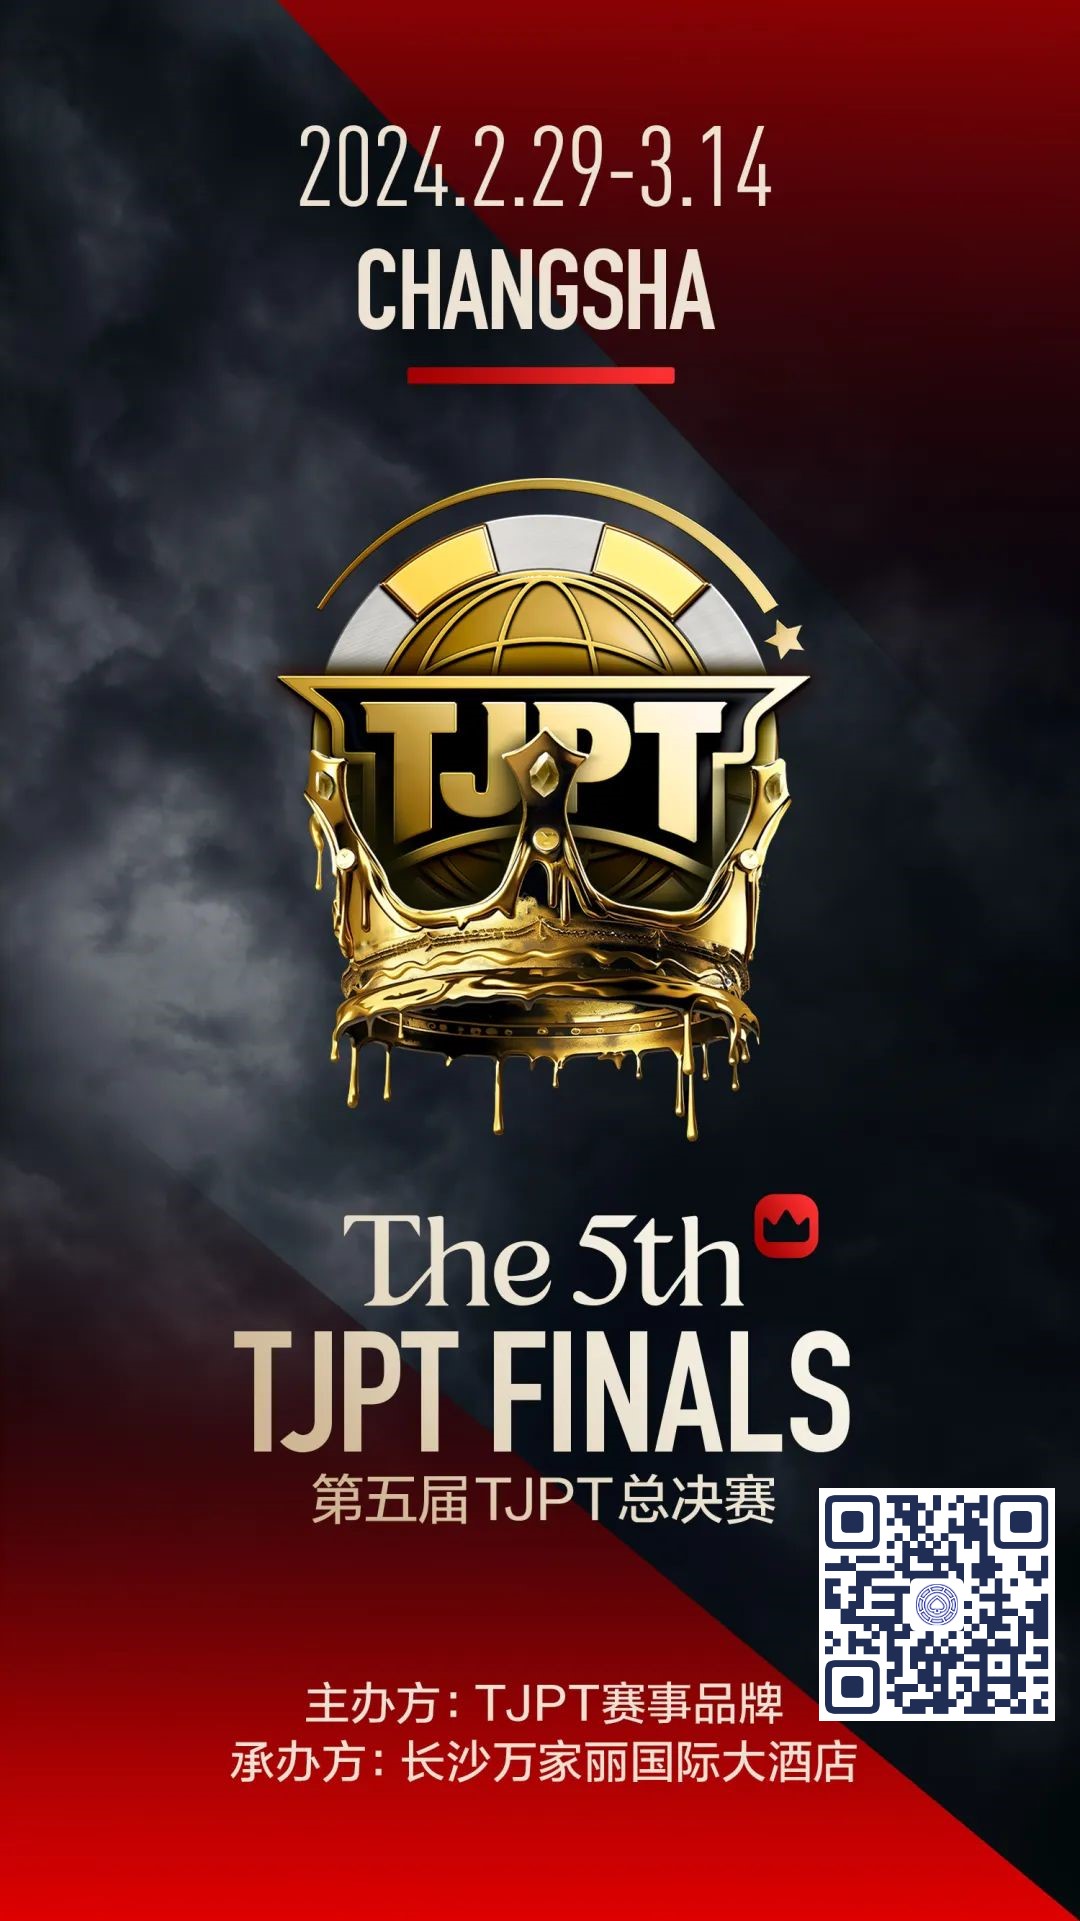 【EV扑克】赛事官宣丨第五届TJPT®总决赛落地长沙万家丽国际大酒店！